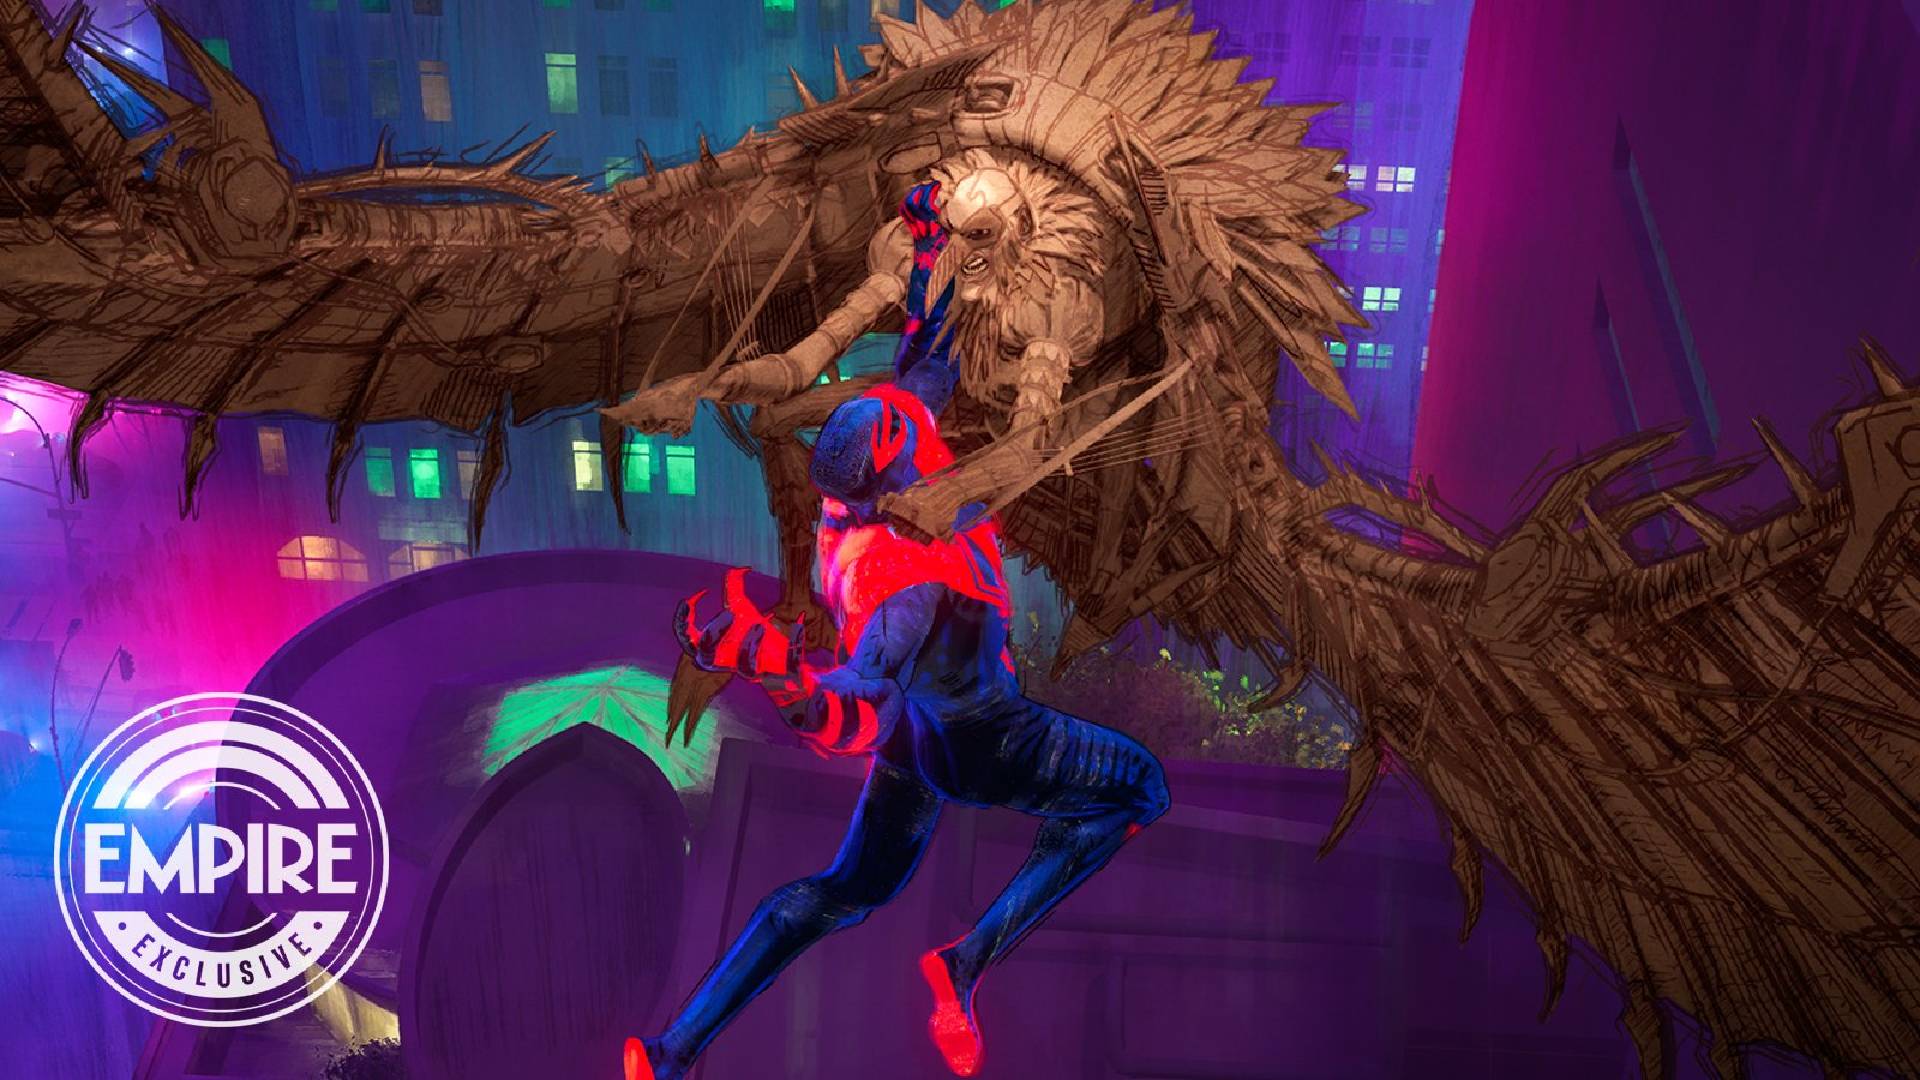 imagen promocional de la nueva pelicula Spiderman a través del Spiderman-verso muy colorida con Spiderman 2999 y el buitre